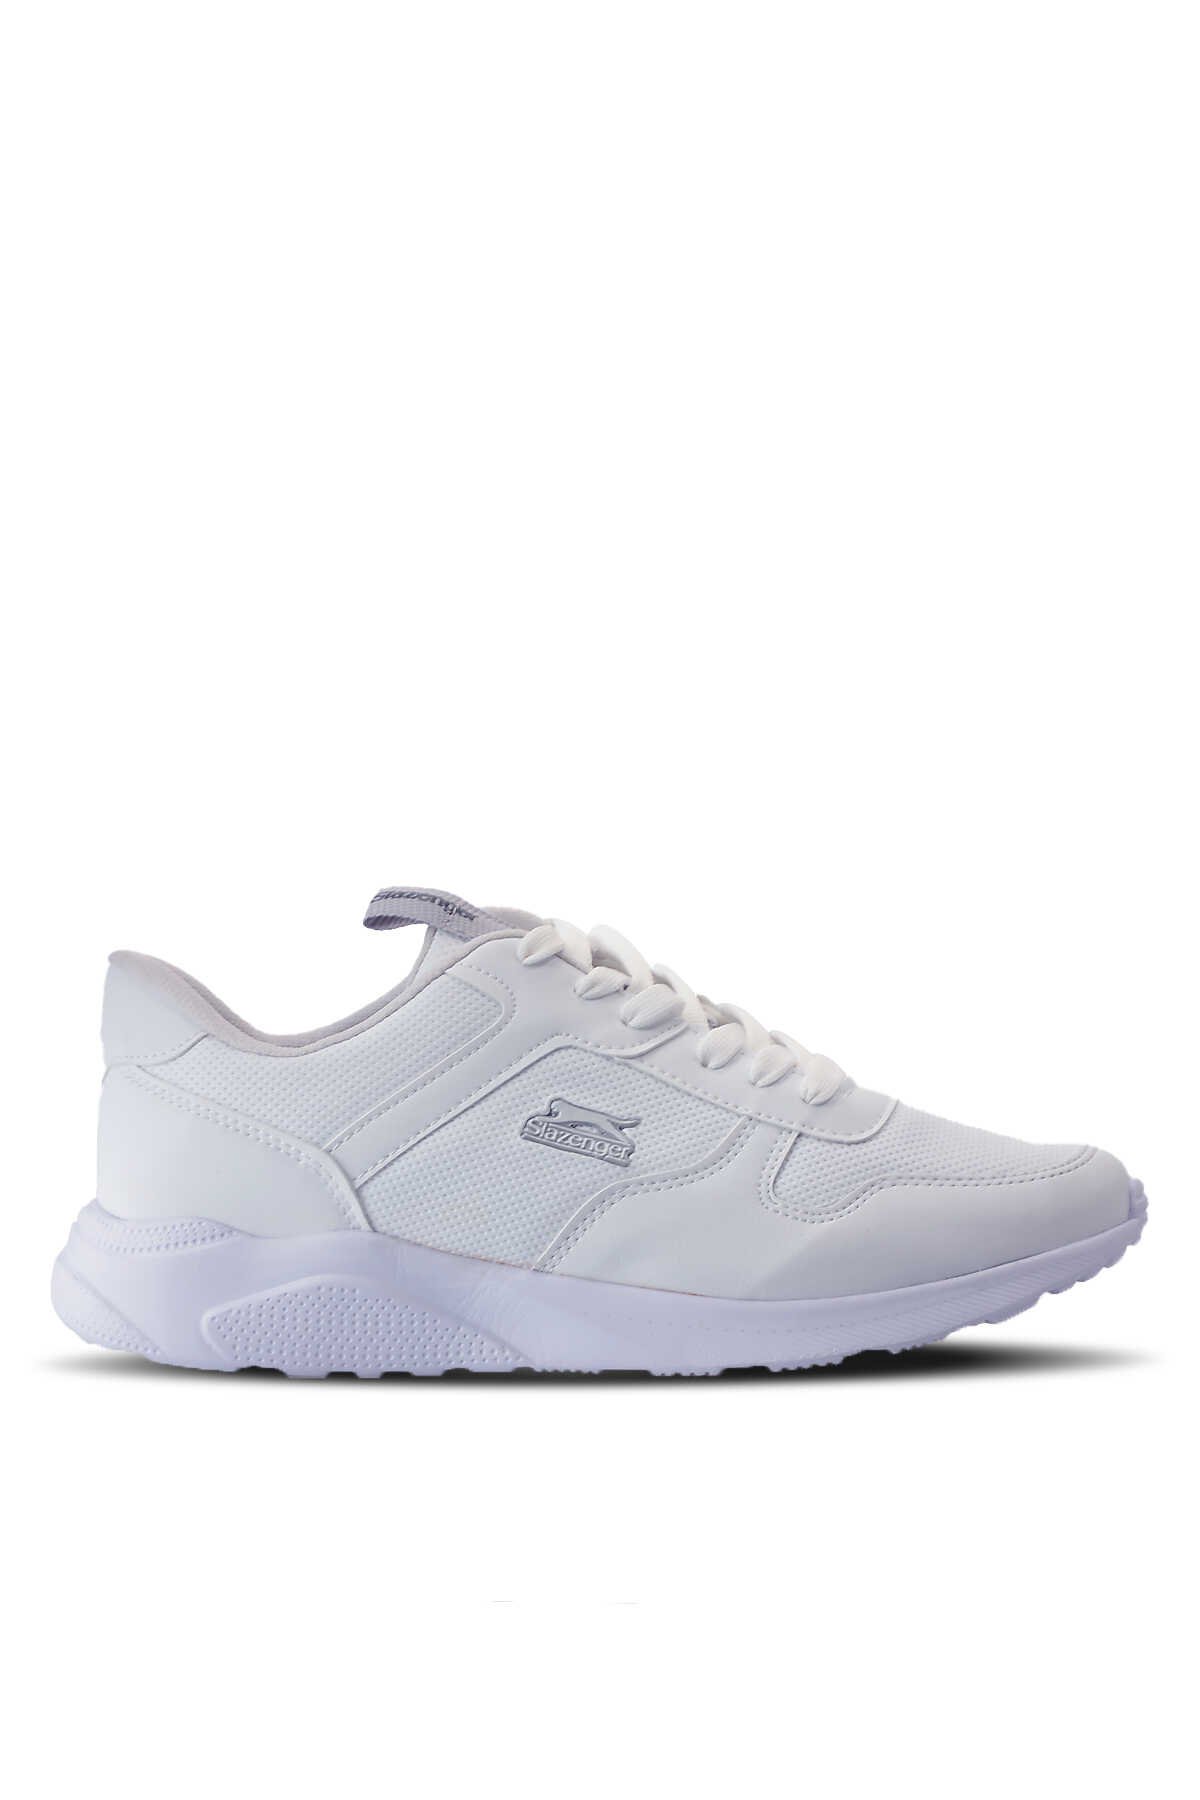 Slazenger - Slazenger ENRICA Sneaker Kadın Ayakkabı Beyaz